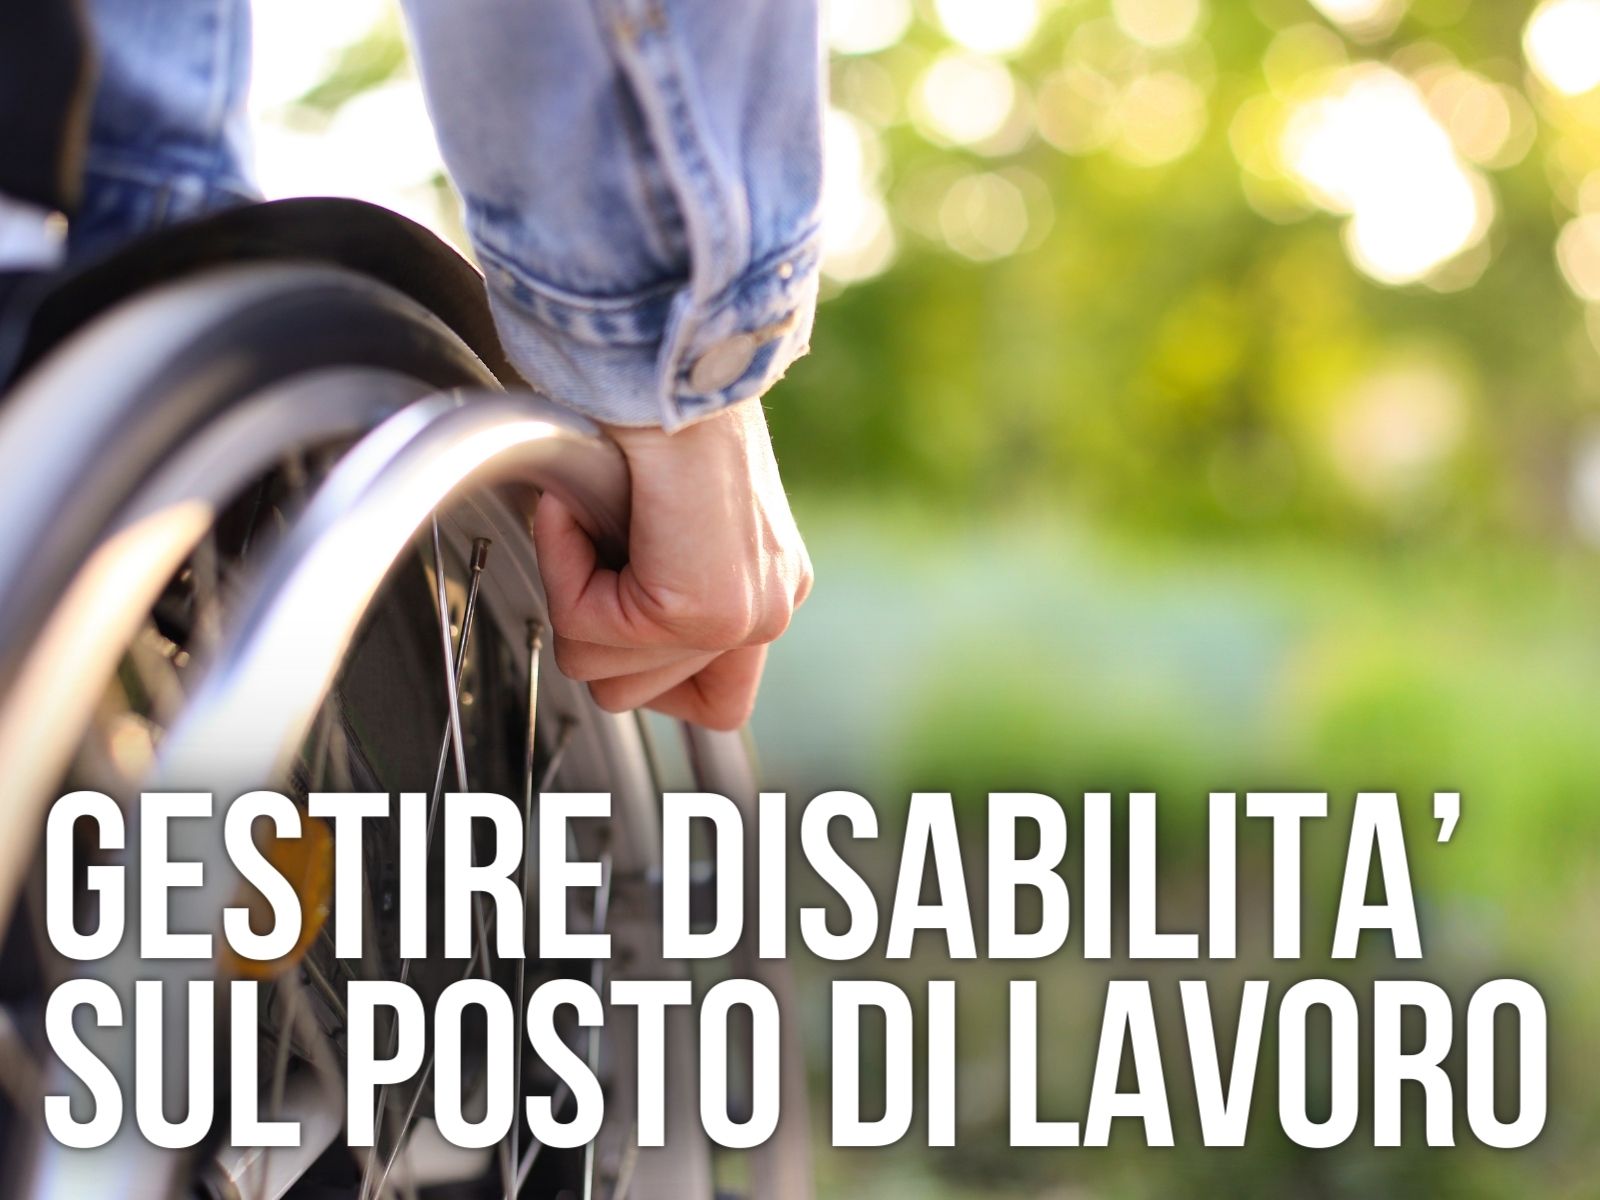 Gestire disabilità sul posto di lavoro - Medicina del Lavoro - Datore di Lavoro